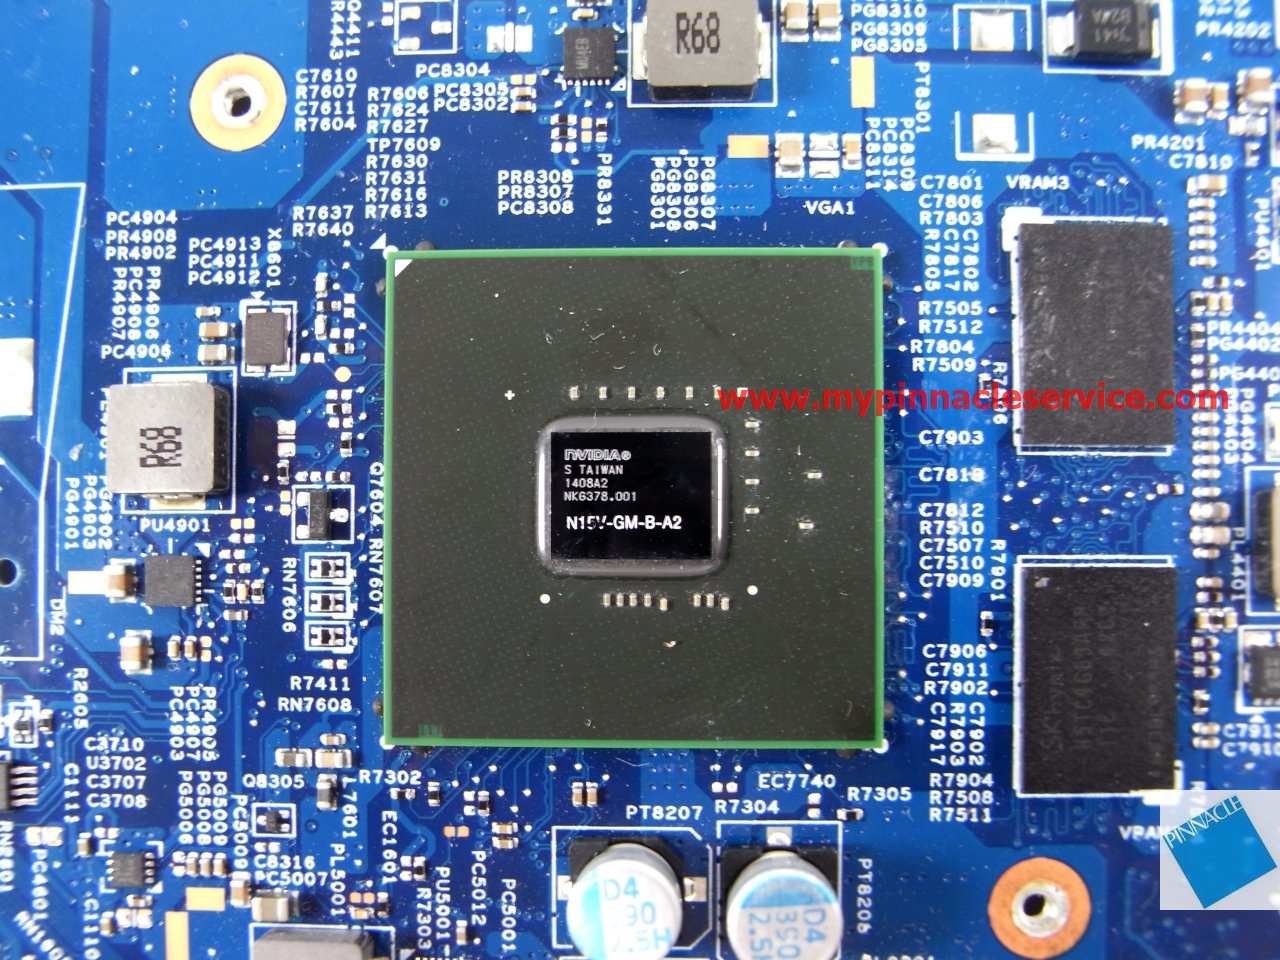 motherboard-for-acer-aspire-e1-410-e1-410g-ea40-bm-48.4oc10.01m-rimg0058-nbmgq11008.jpg